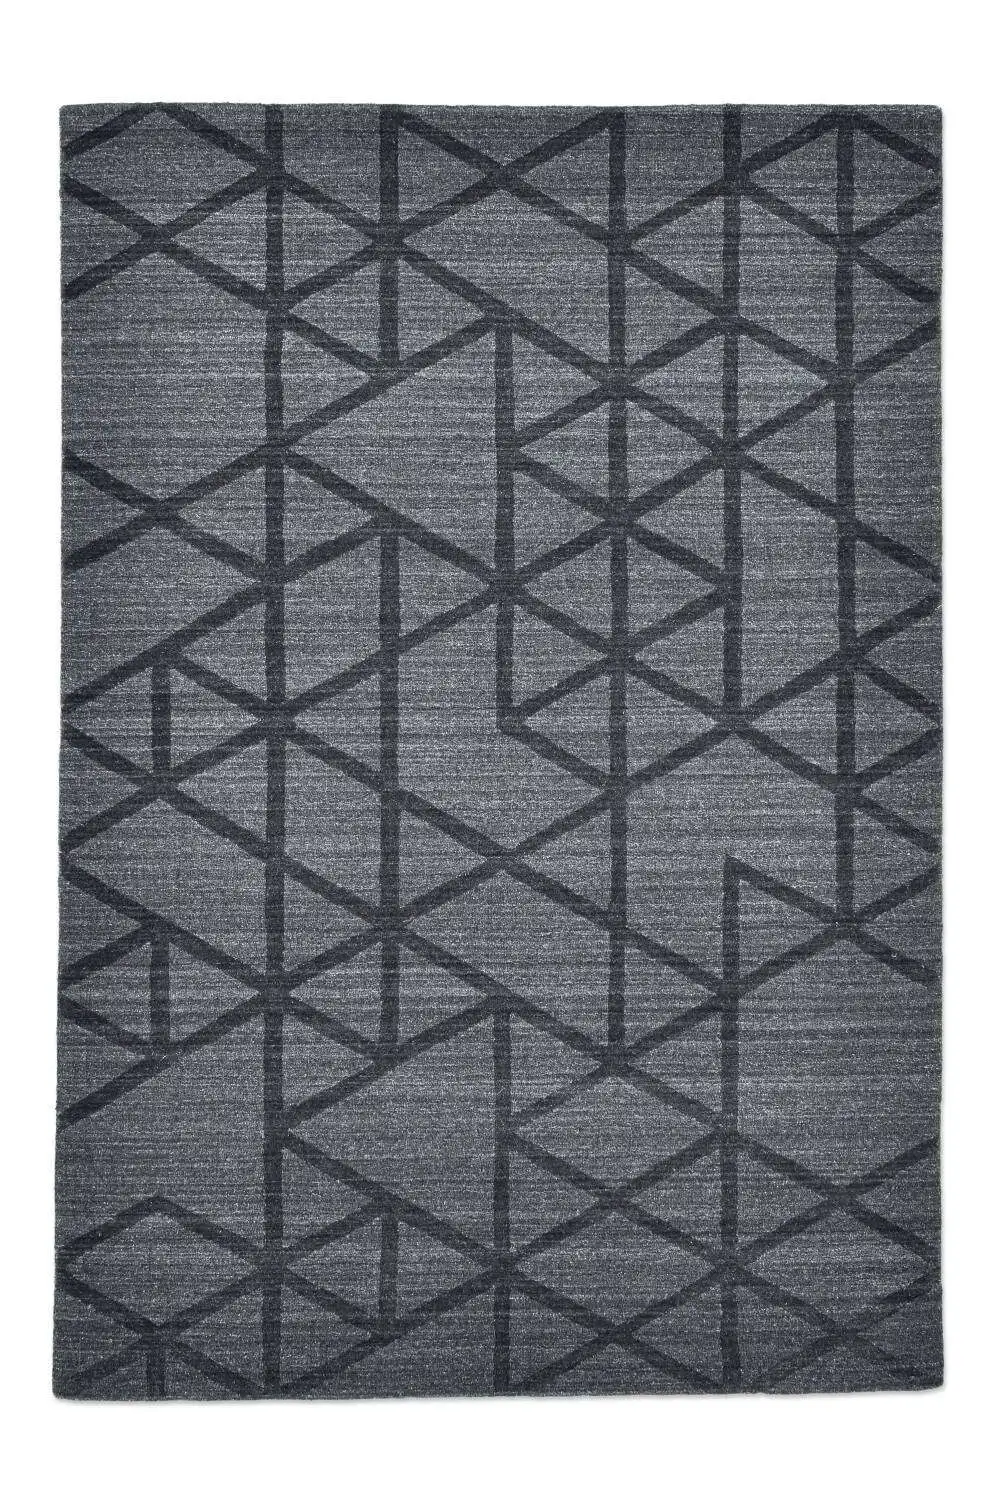 Vico Design Teppich Viskose Schurwolle grey 160x230cm